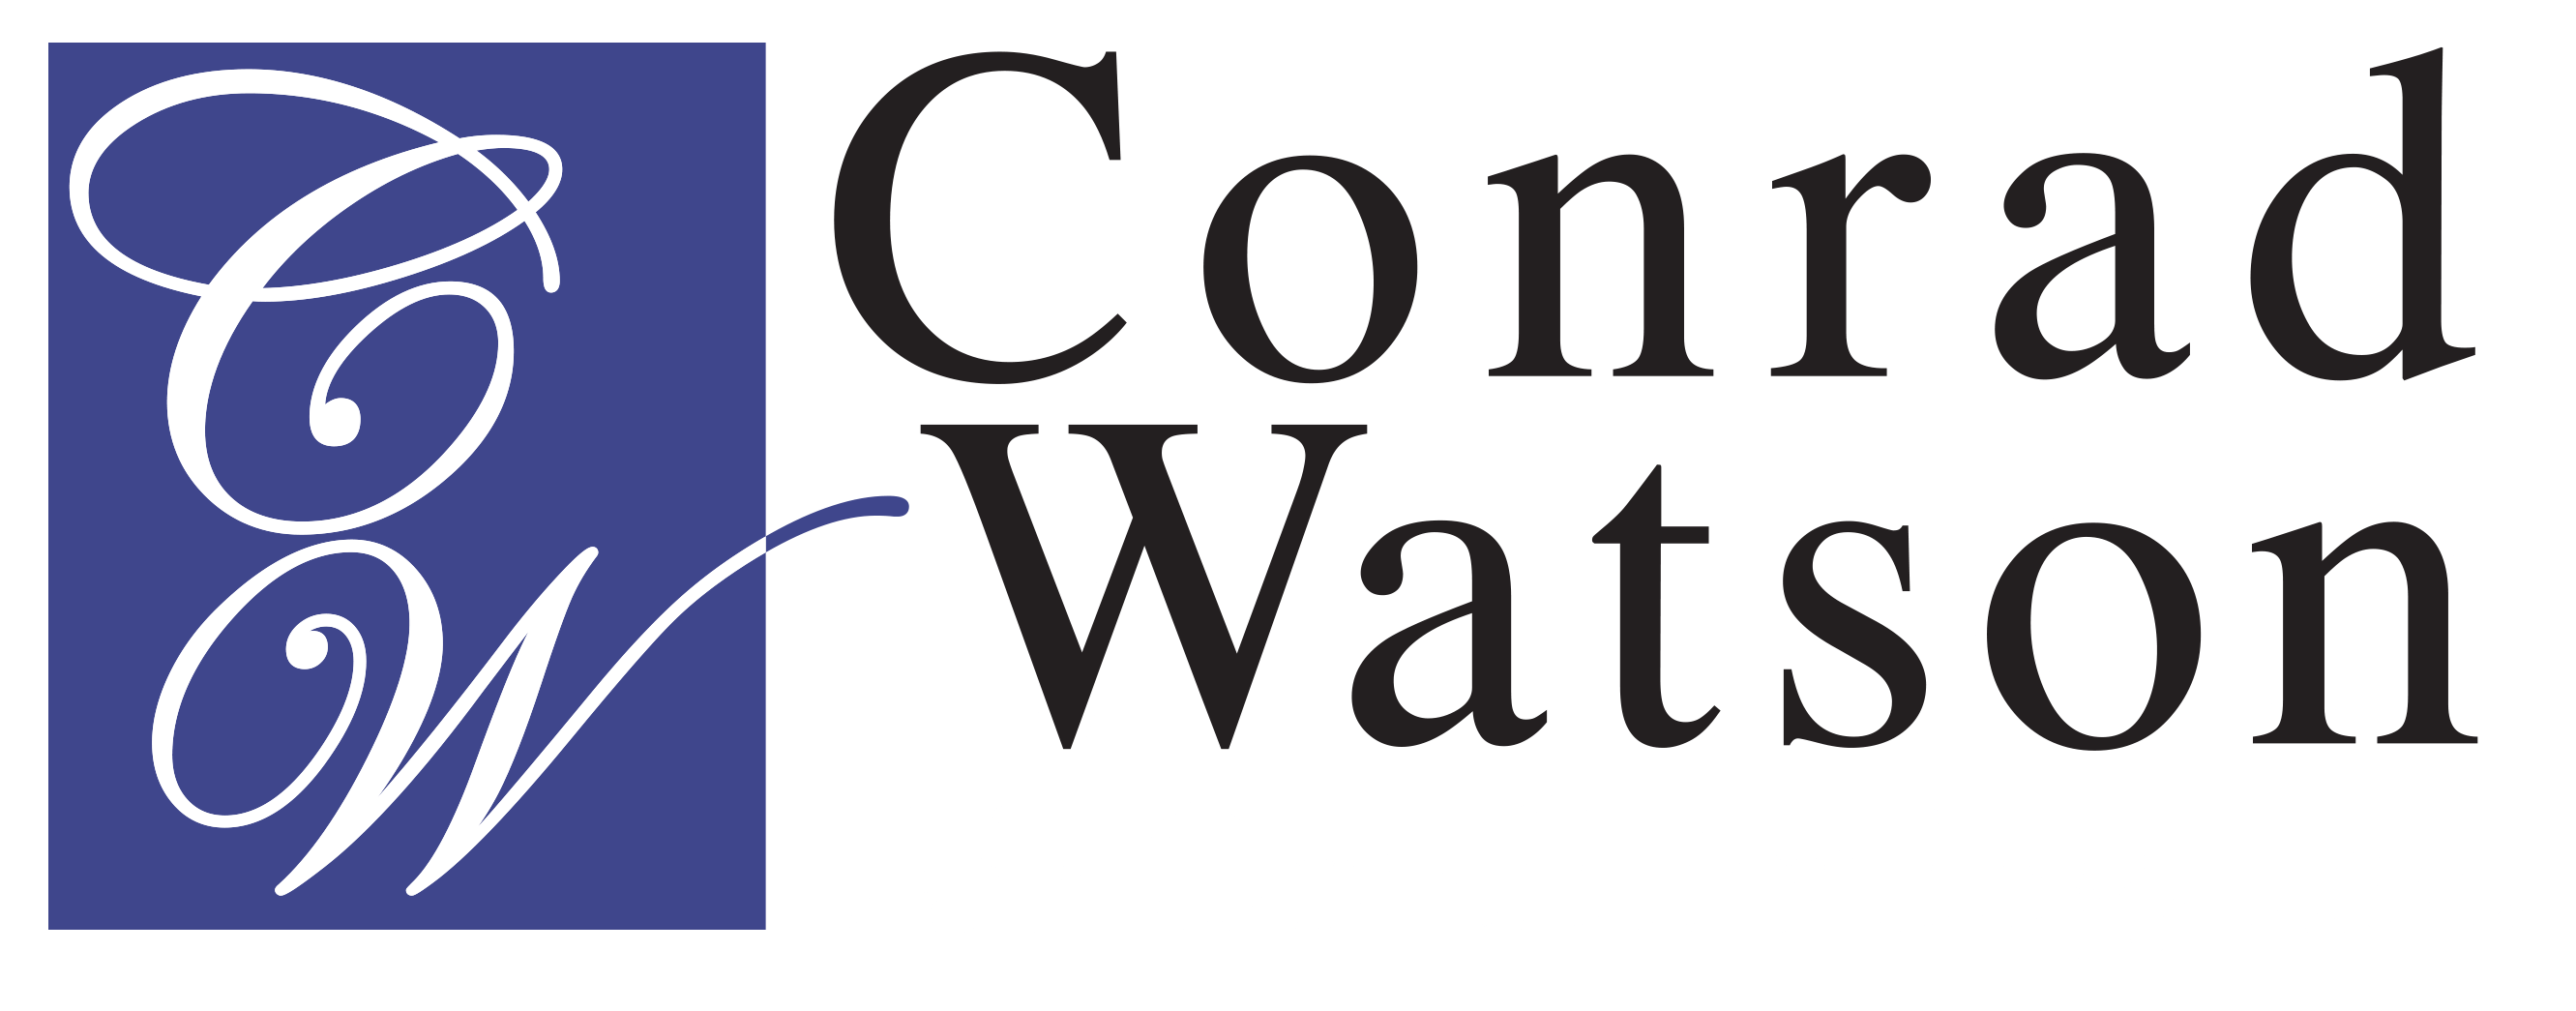 Conrad Logo - Home - Conrad Watson Air Conditioning, Inc.